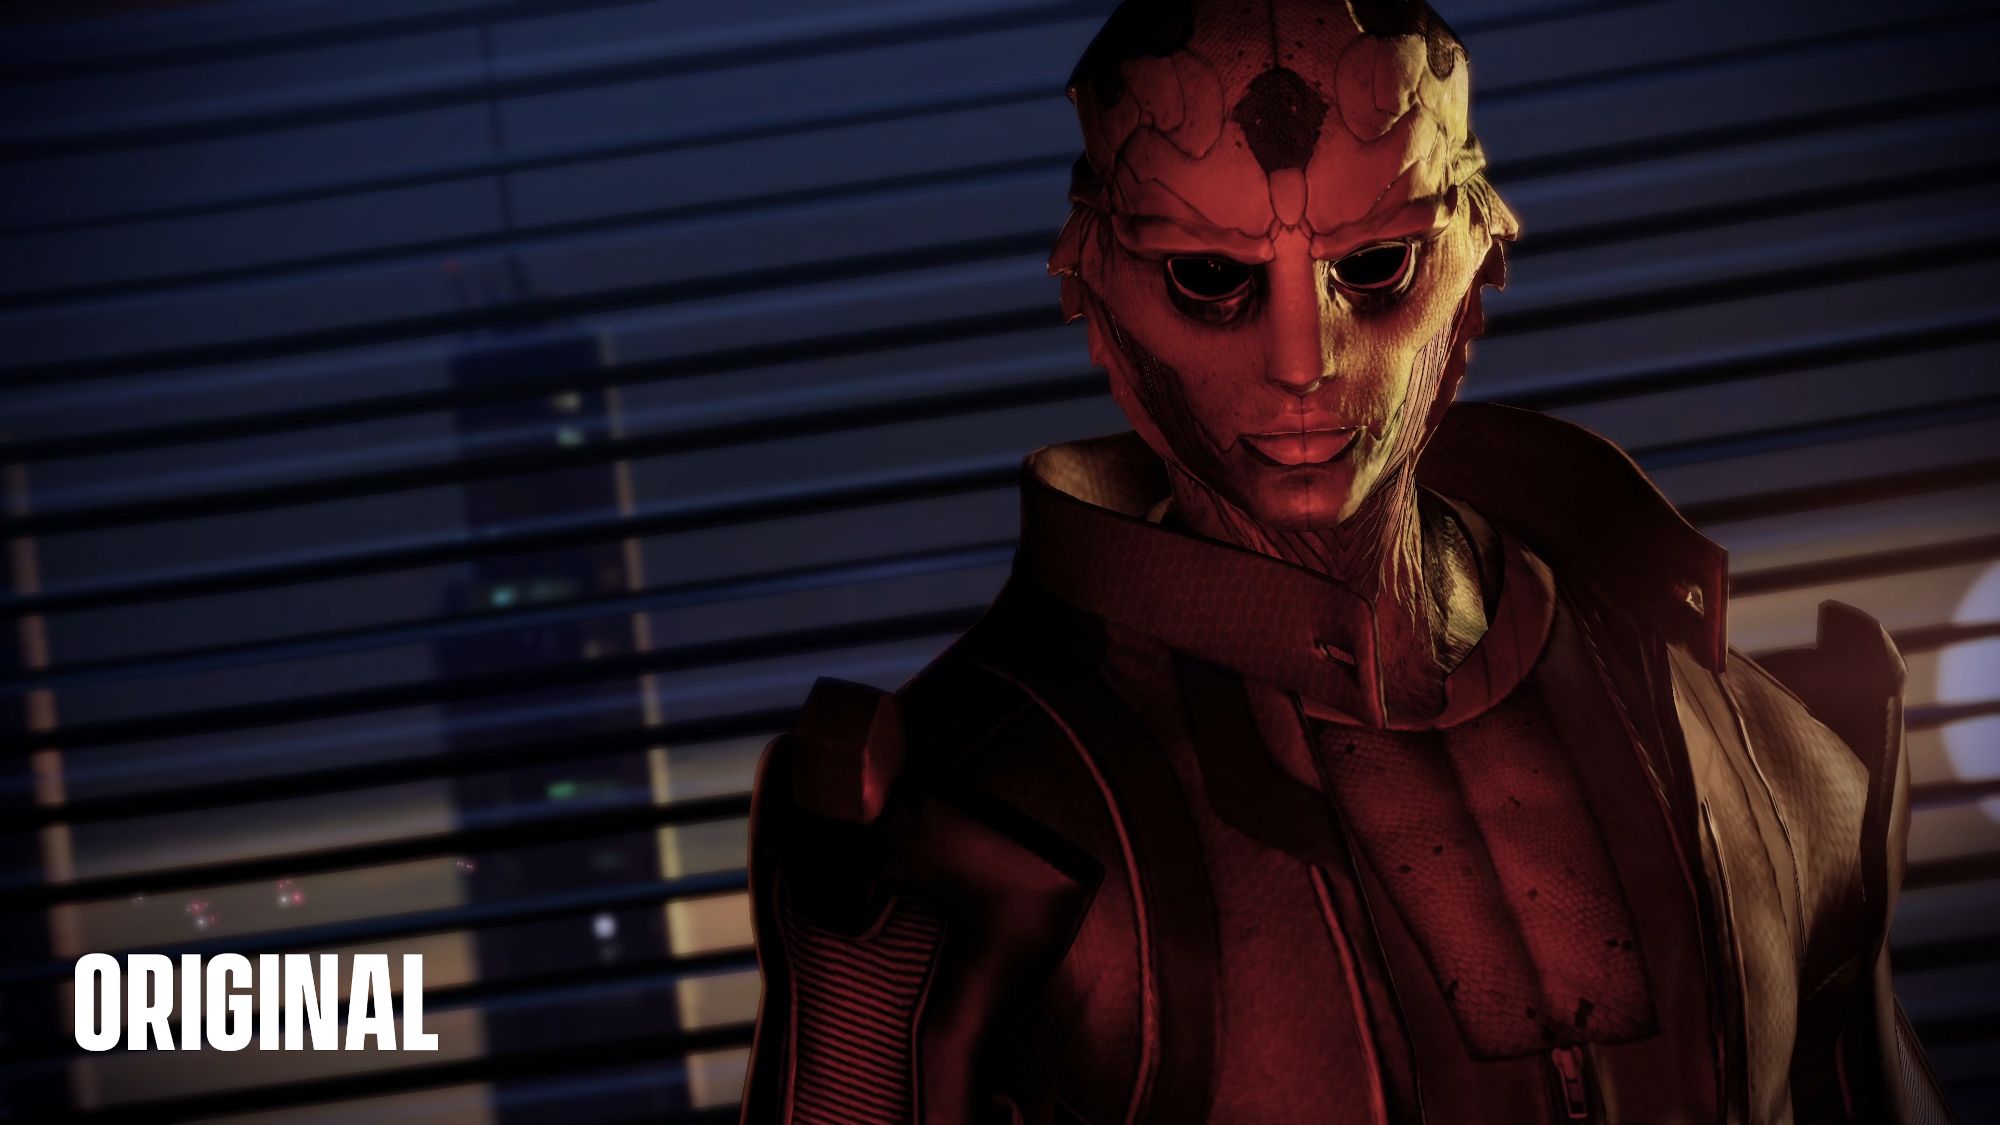 Thane from Mass Effect original